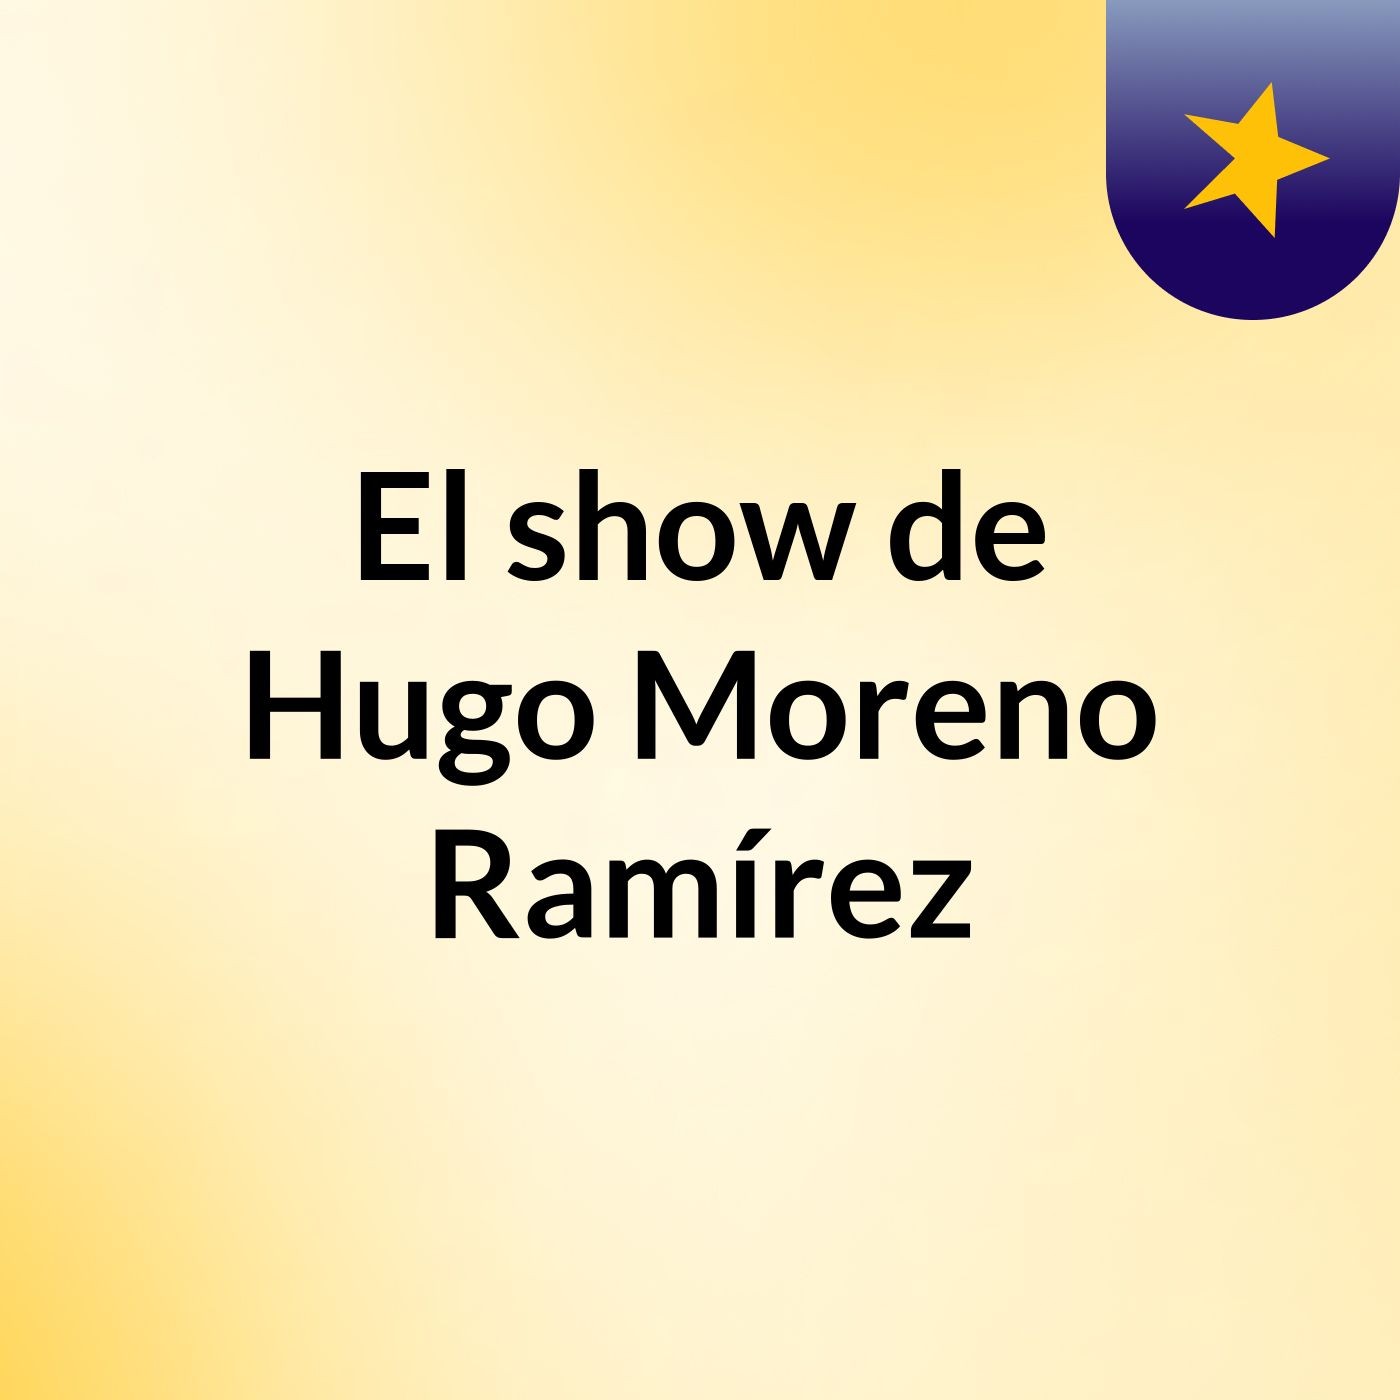 El show de Hugo Moreno Ramírez